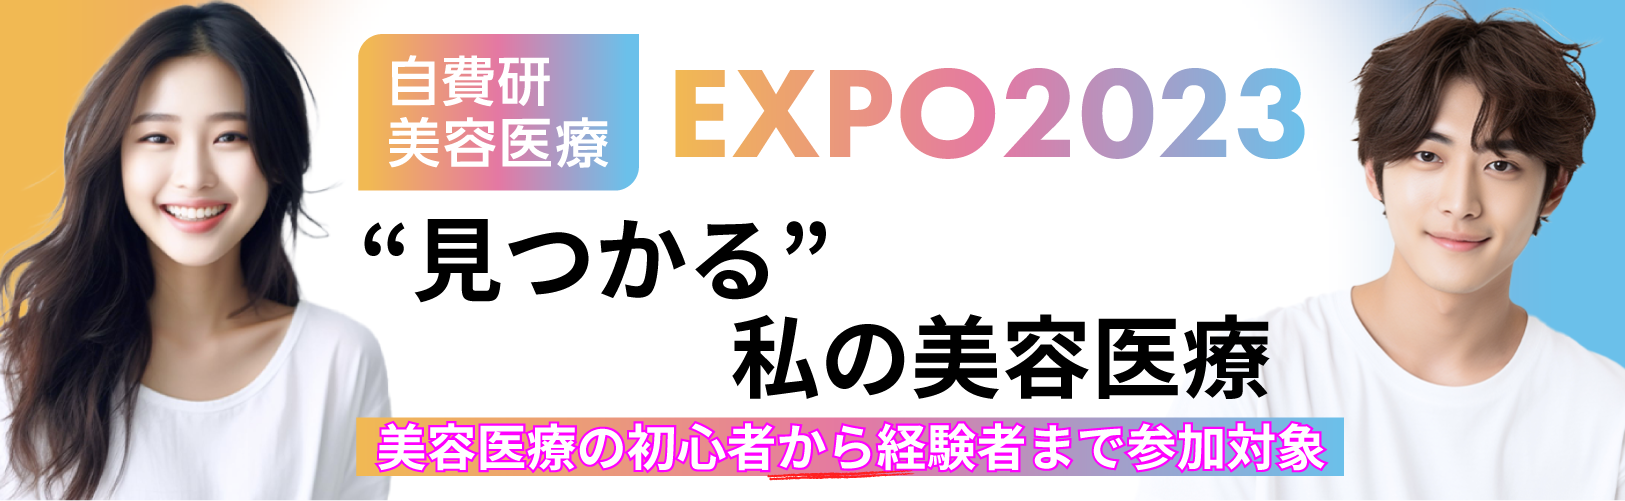 自費研美容医療EXPO2023バナー